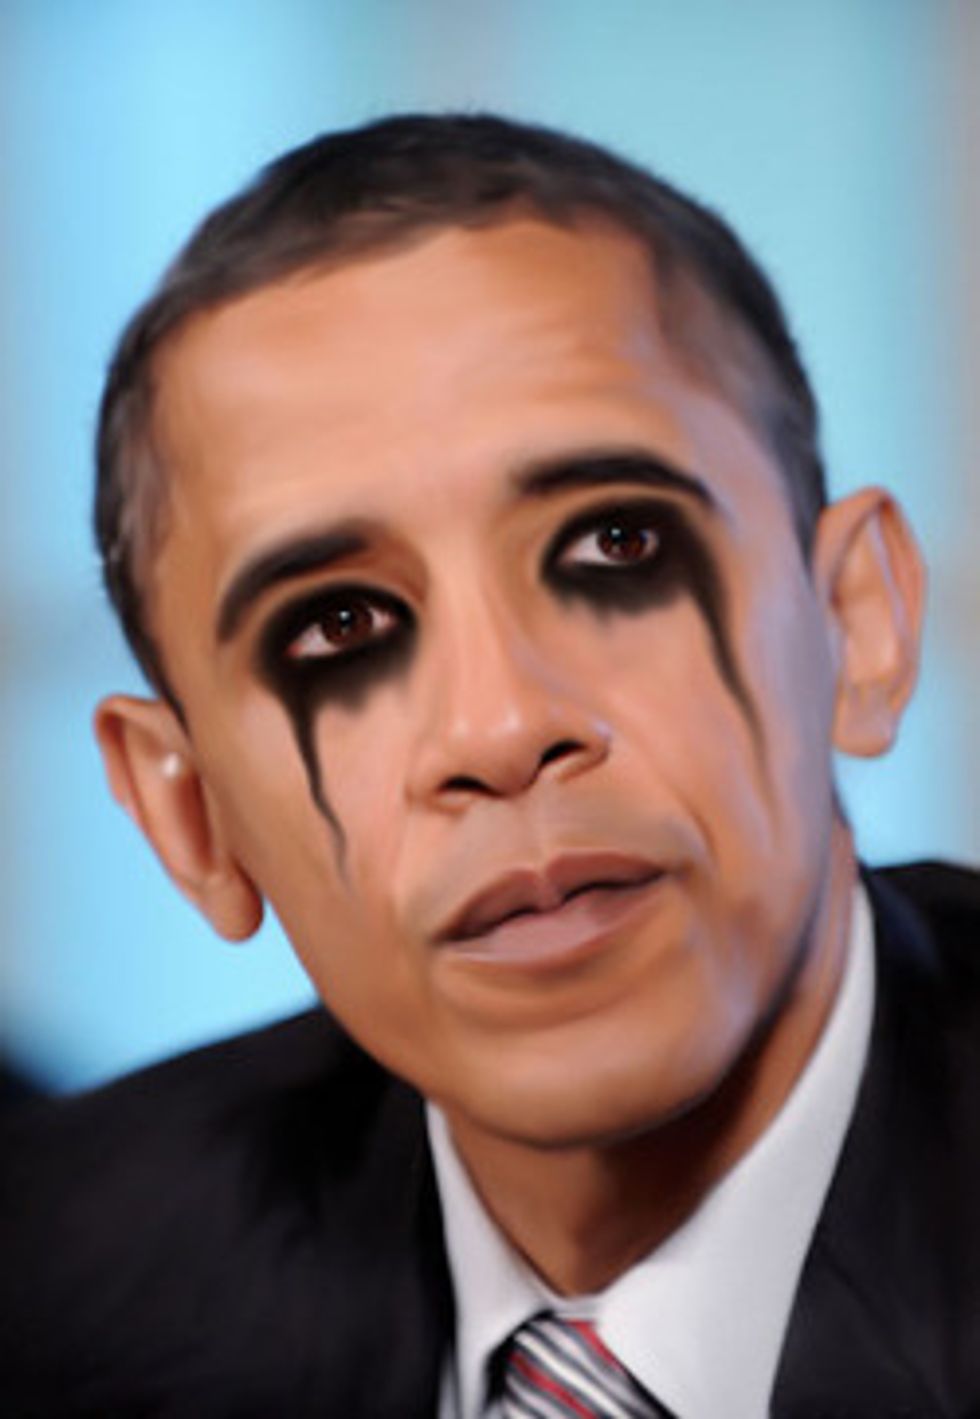 2013: The Year You Stopped Loving Barack Obama